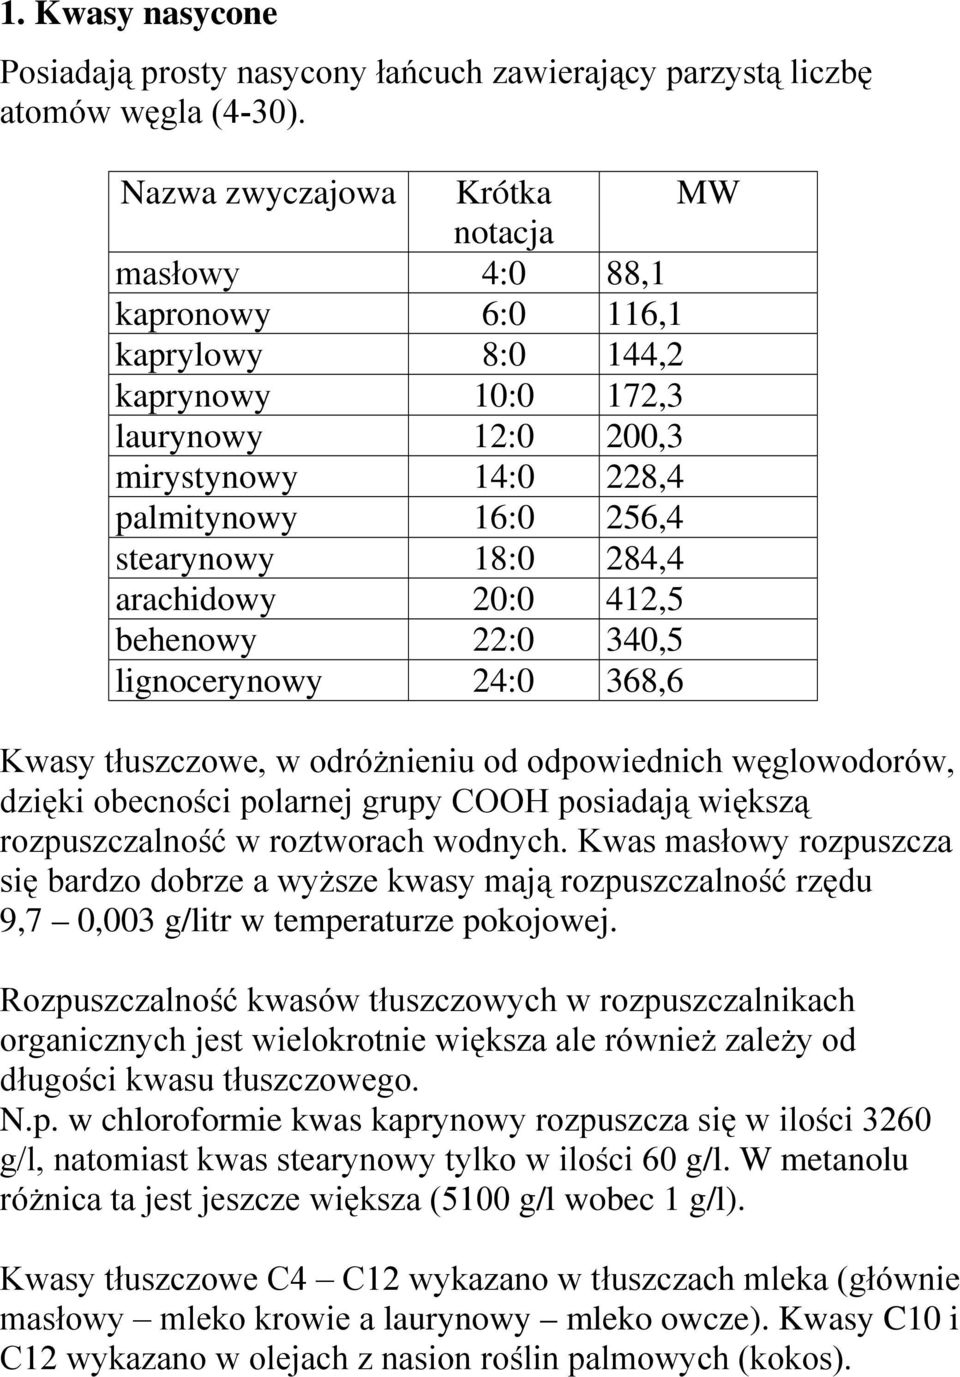 284,4 arachidowy 20:0 412,5 behenowy 22:0 340,5 lignocerynowy 24:0 368,6 Kwasy tłuszczowe, w odróżnieniu od odpowiednich węglowodorów, dzięki obecności polarnej grupy COOH posiadają większą